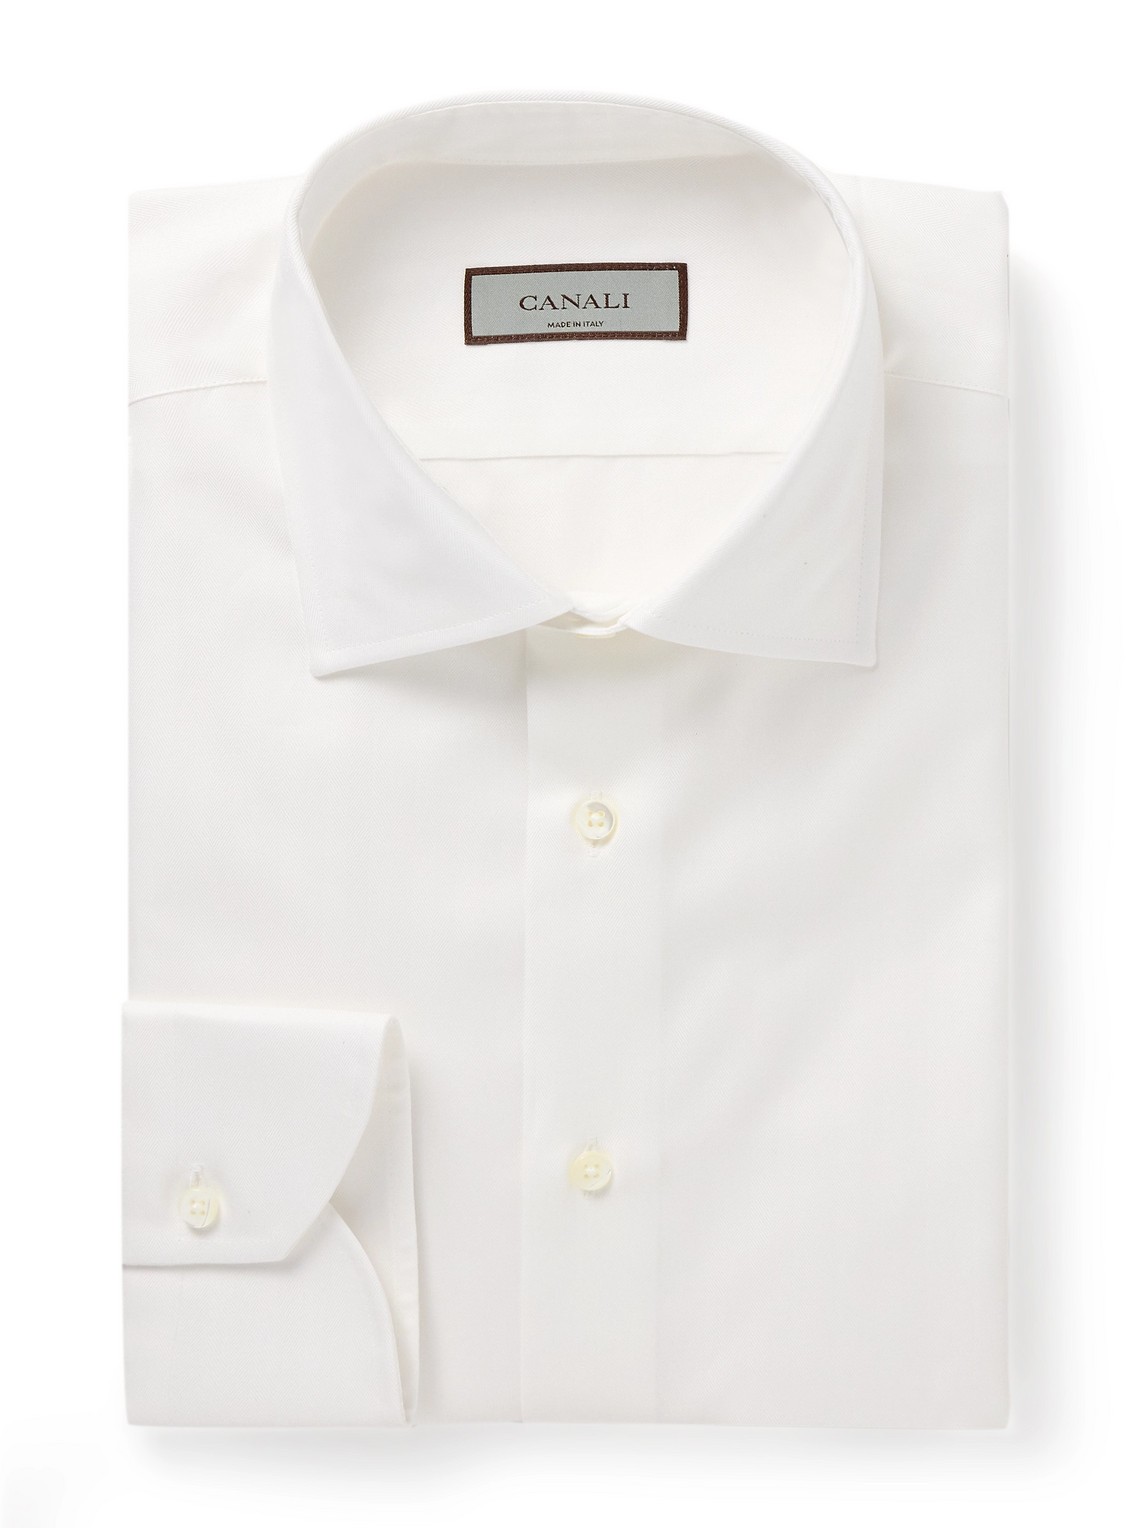 Canali Herringbone Cotton Shirt In White